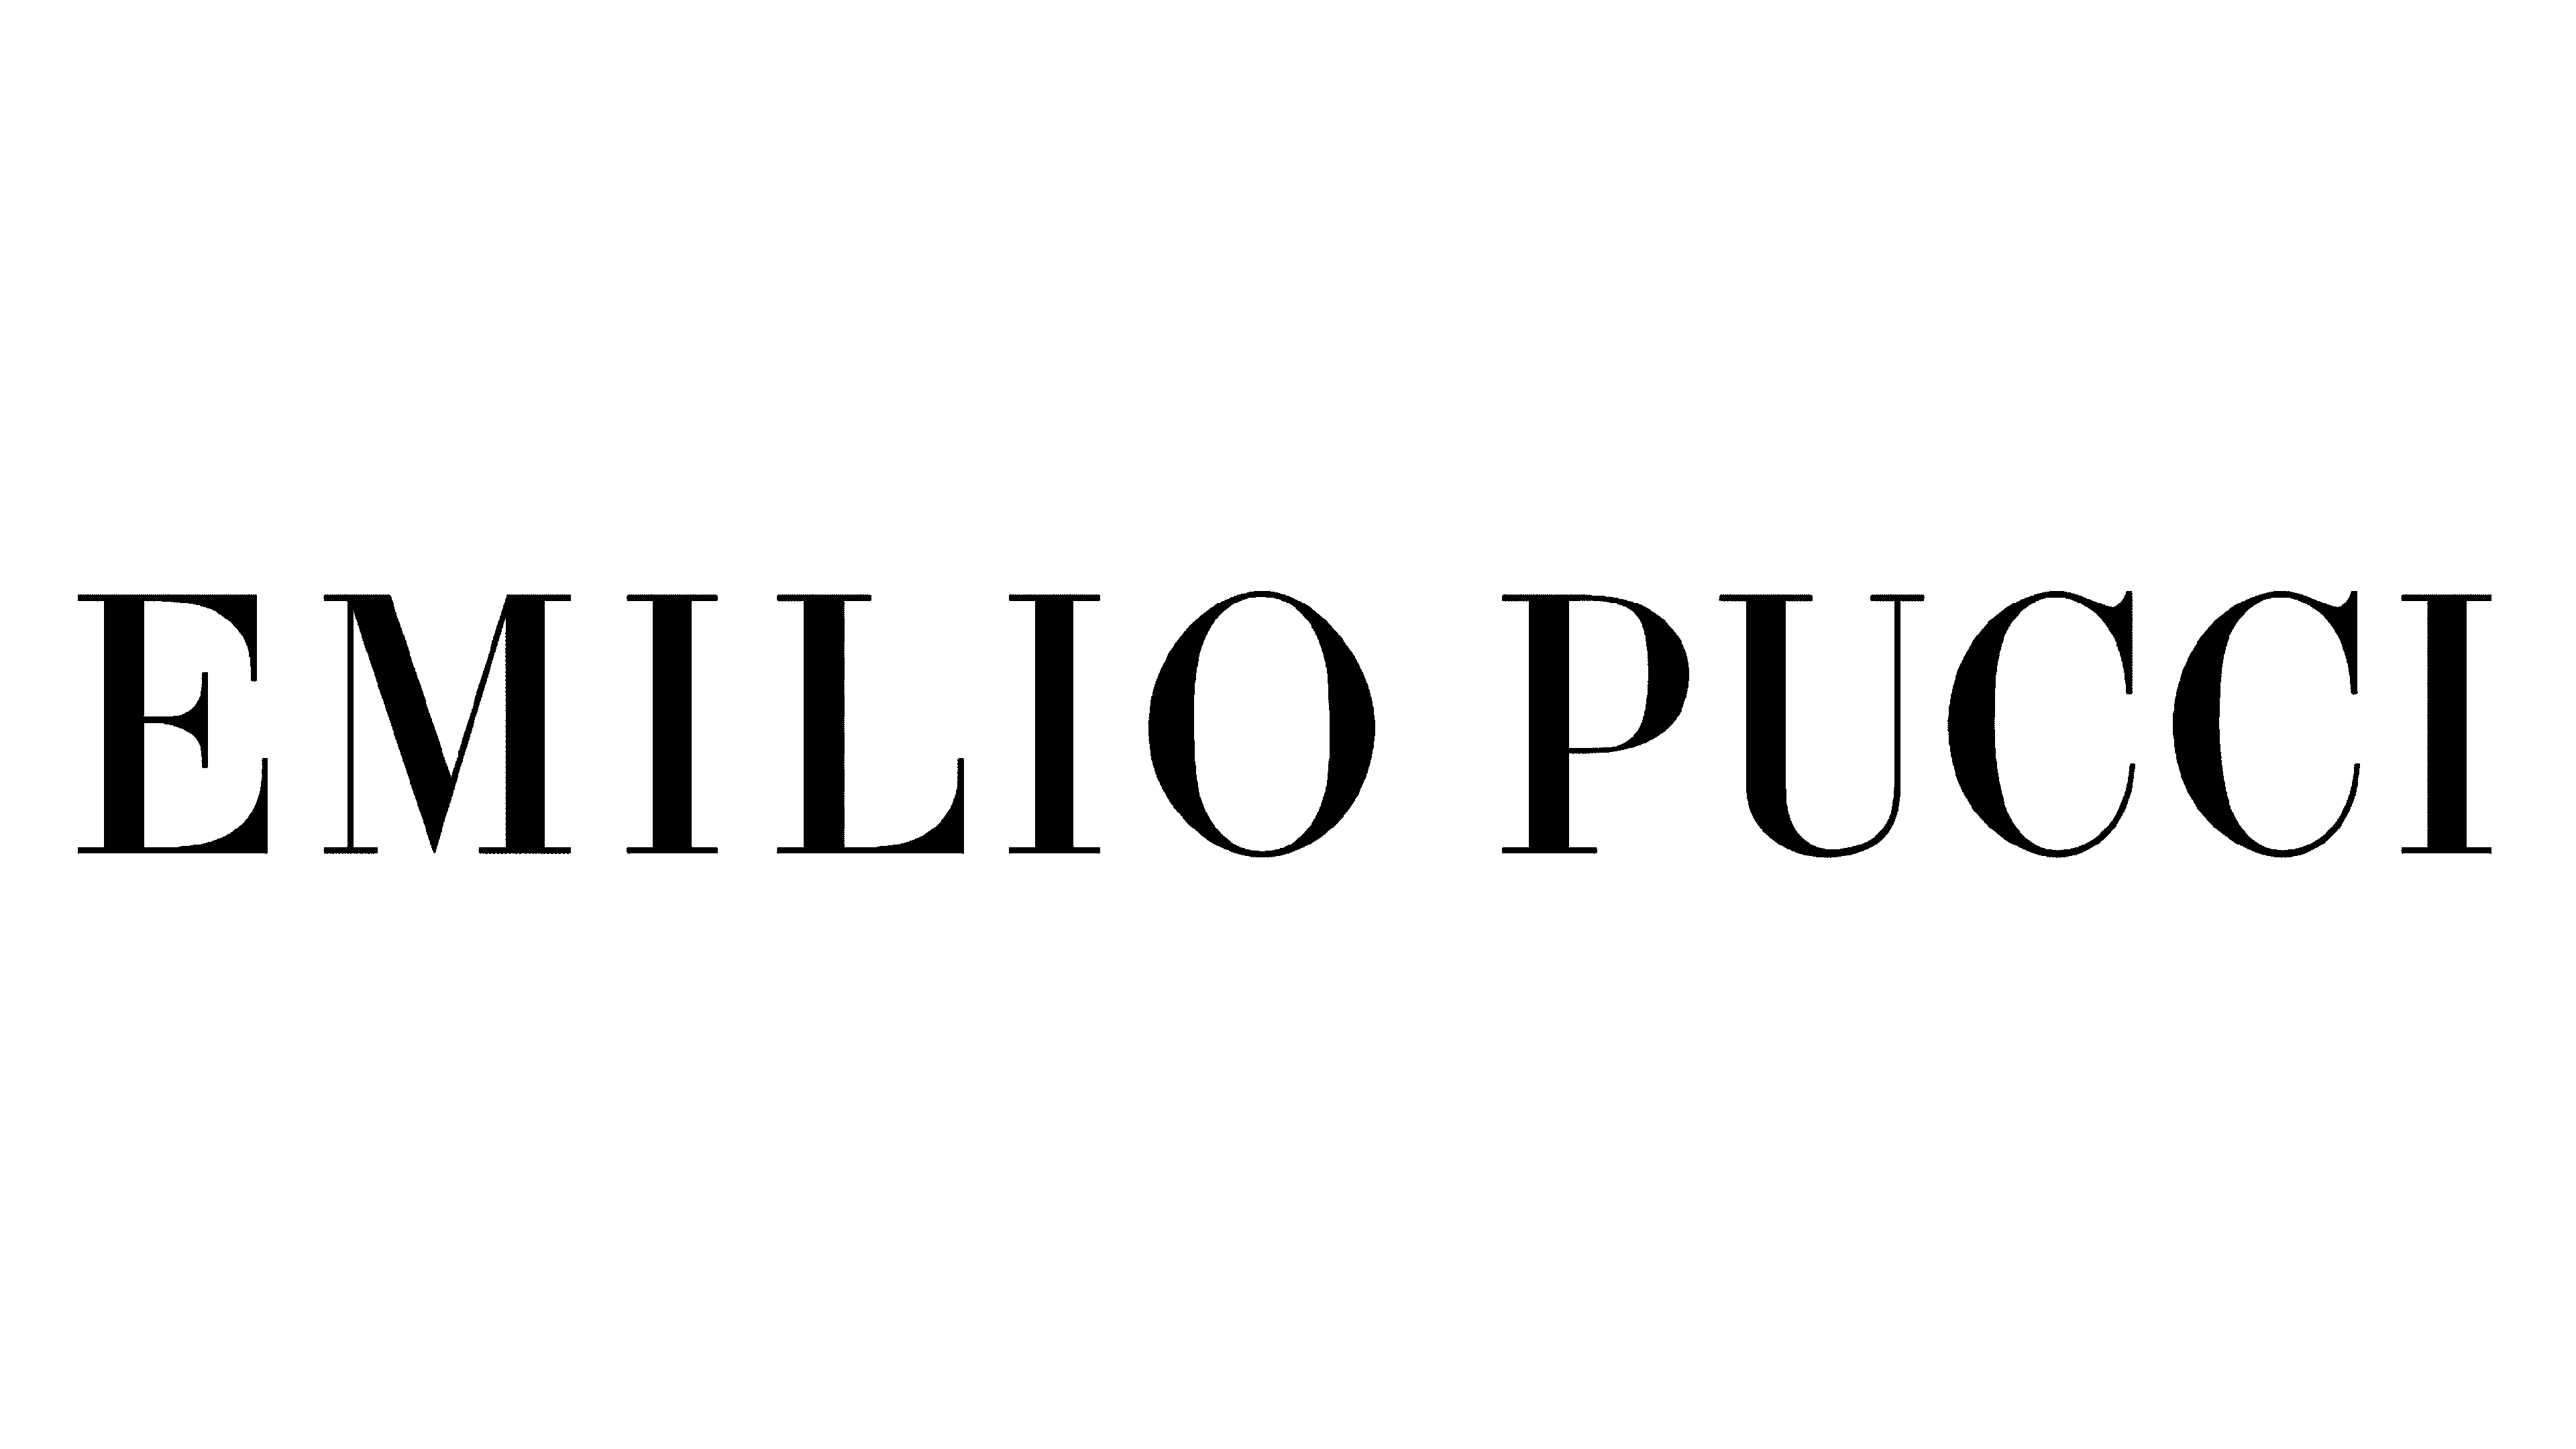 Emilio pucci, Art logo, Graphic design typography